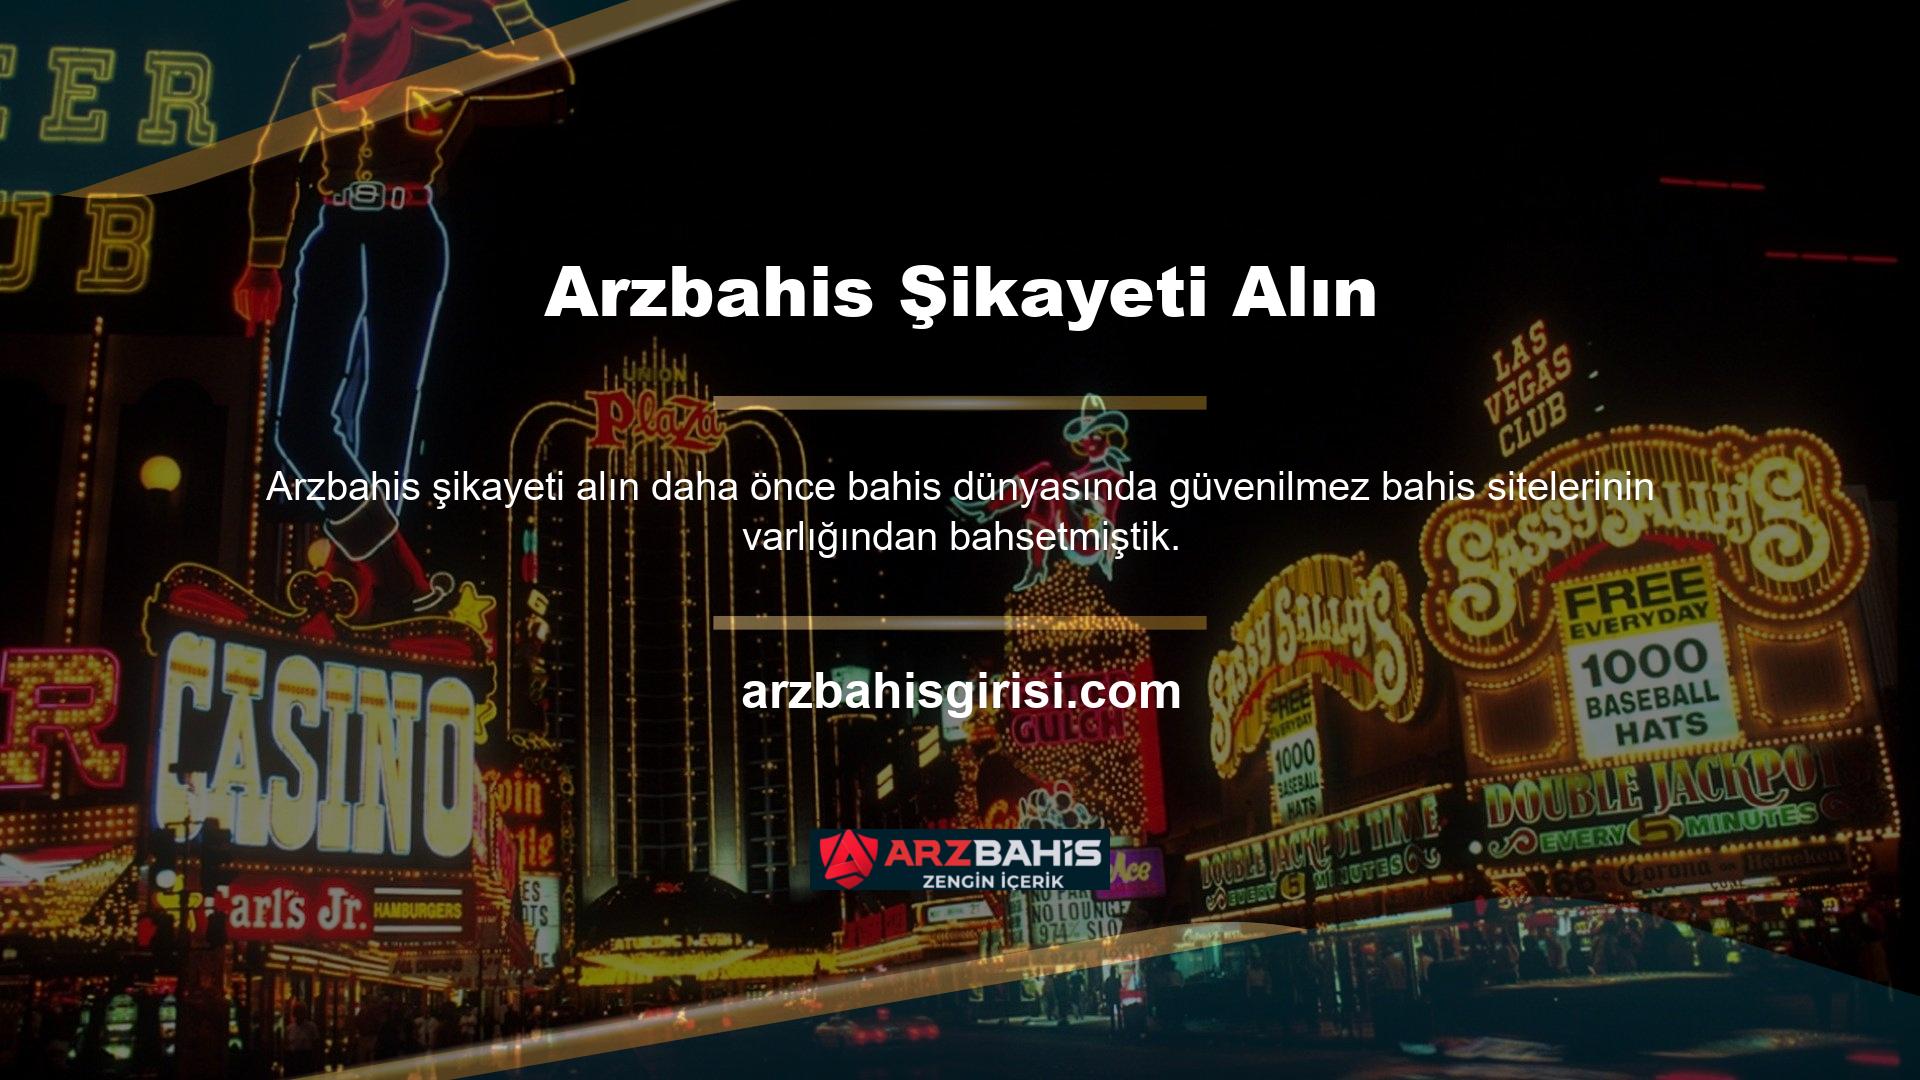 Bu casino sitelerinin çalışma politikaları müşteri şikayetlerine dayanmaktadır